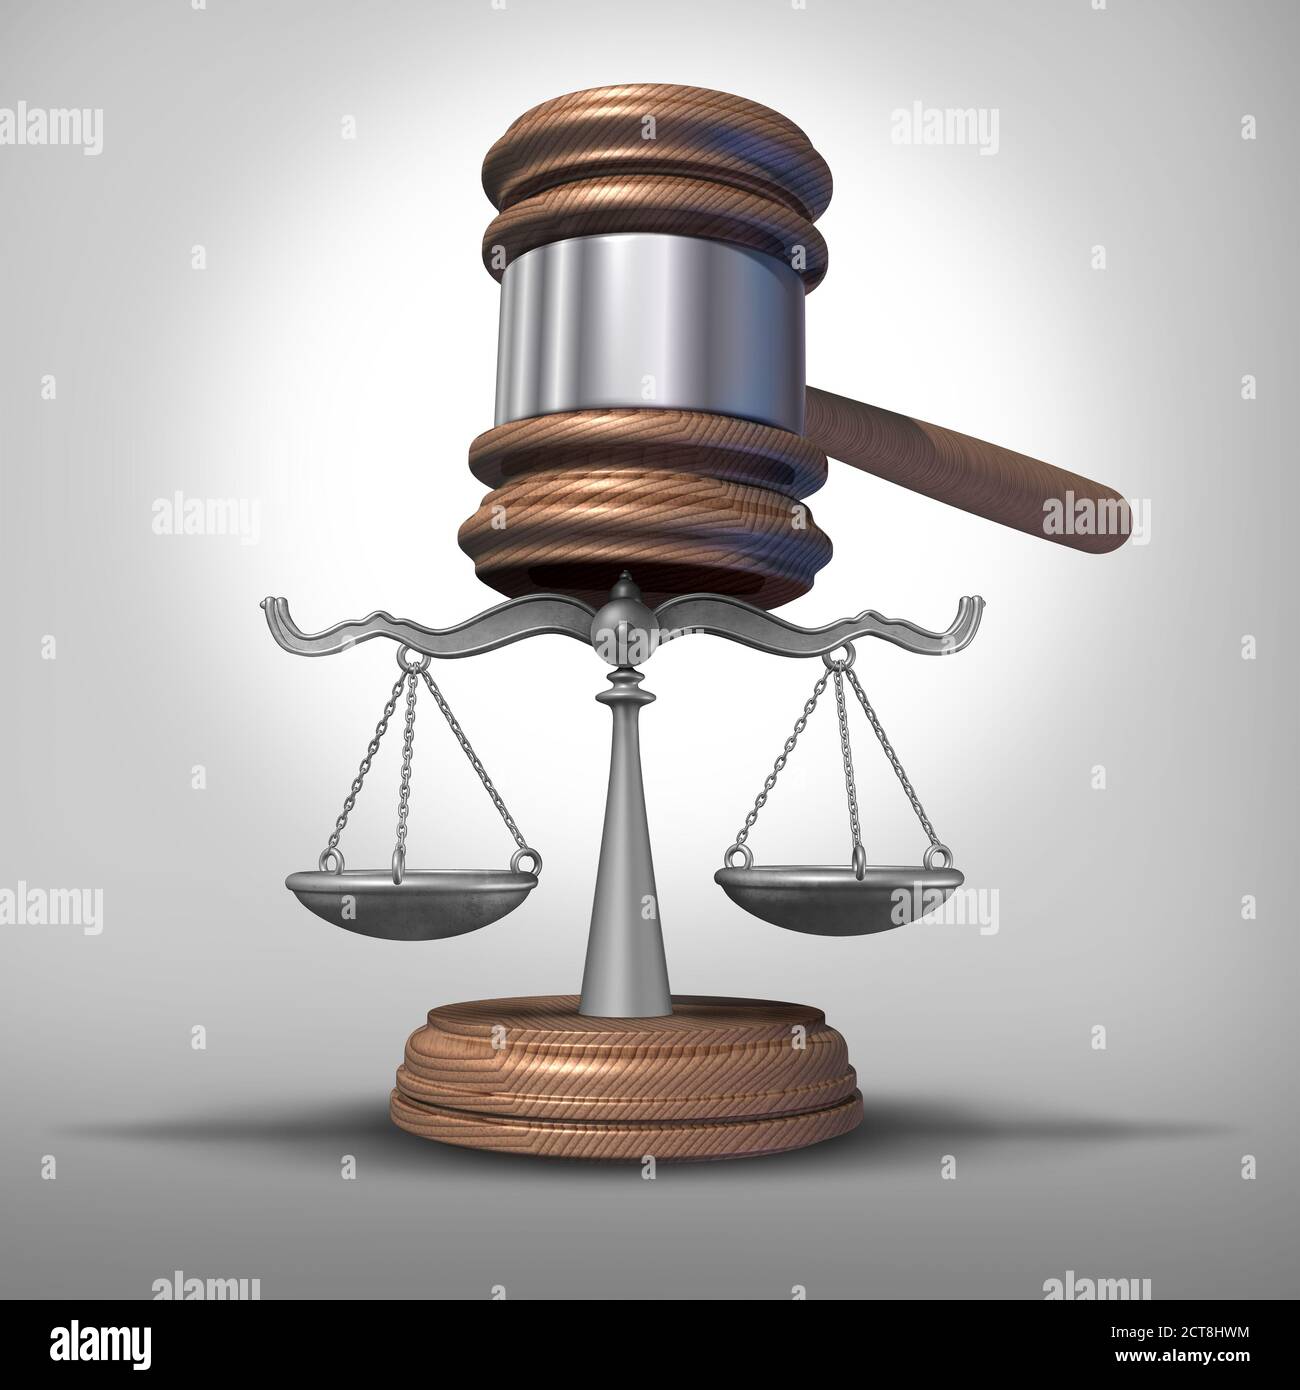 Concept juridique avec des échelles de droit de la justice avec comme symbole juridique ou de légalité d'un juge gavel et verdict avec éléments d'illustration 3D. Banque D'Images